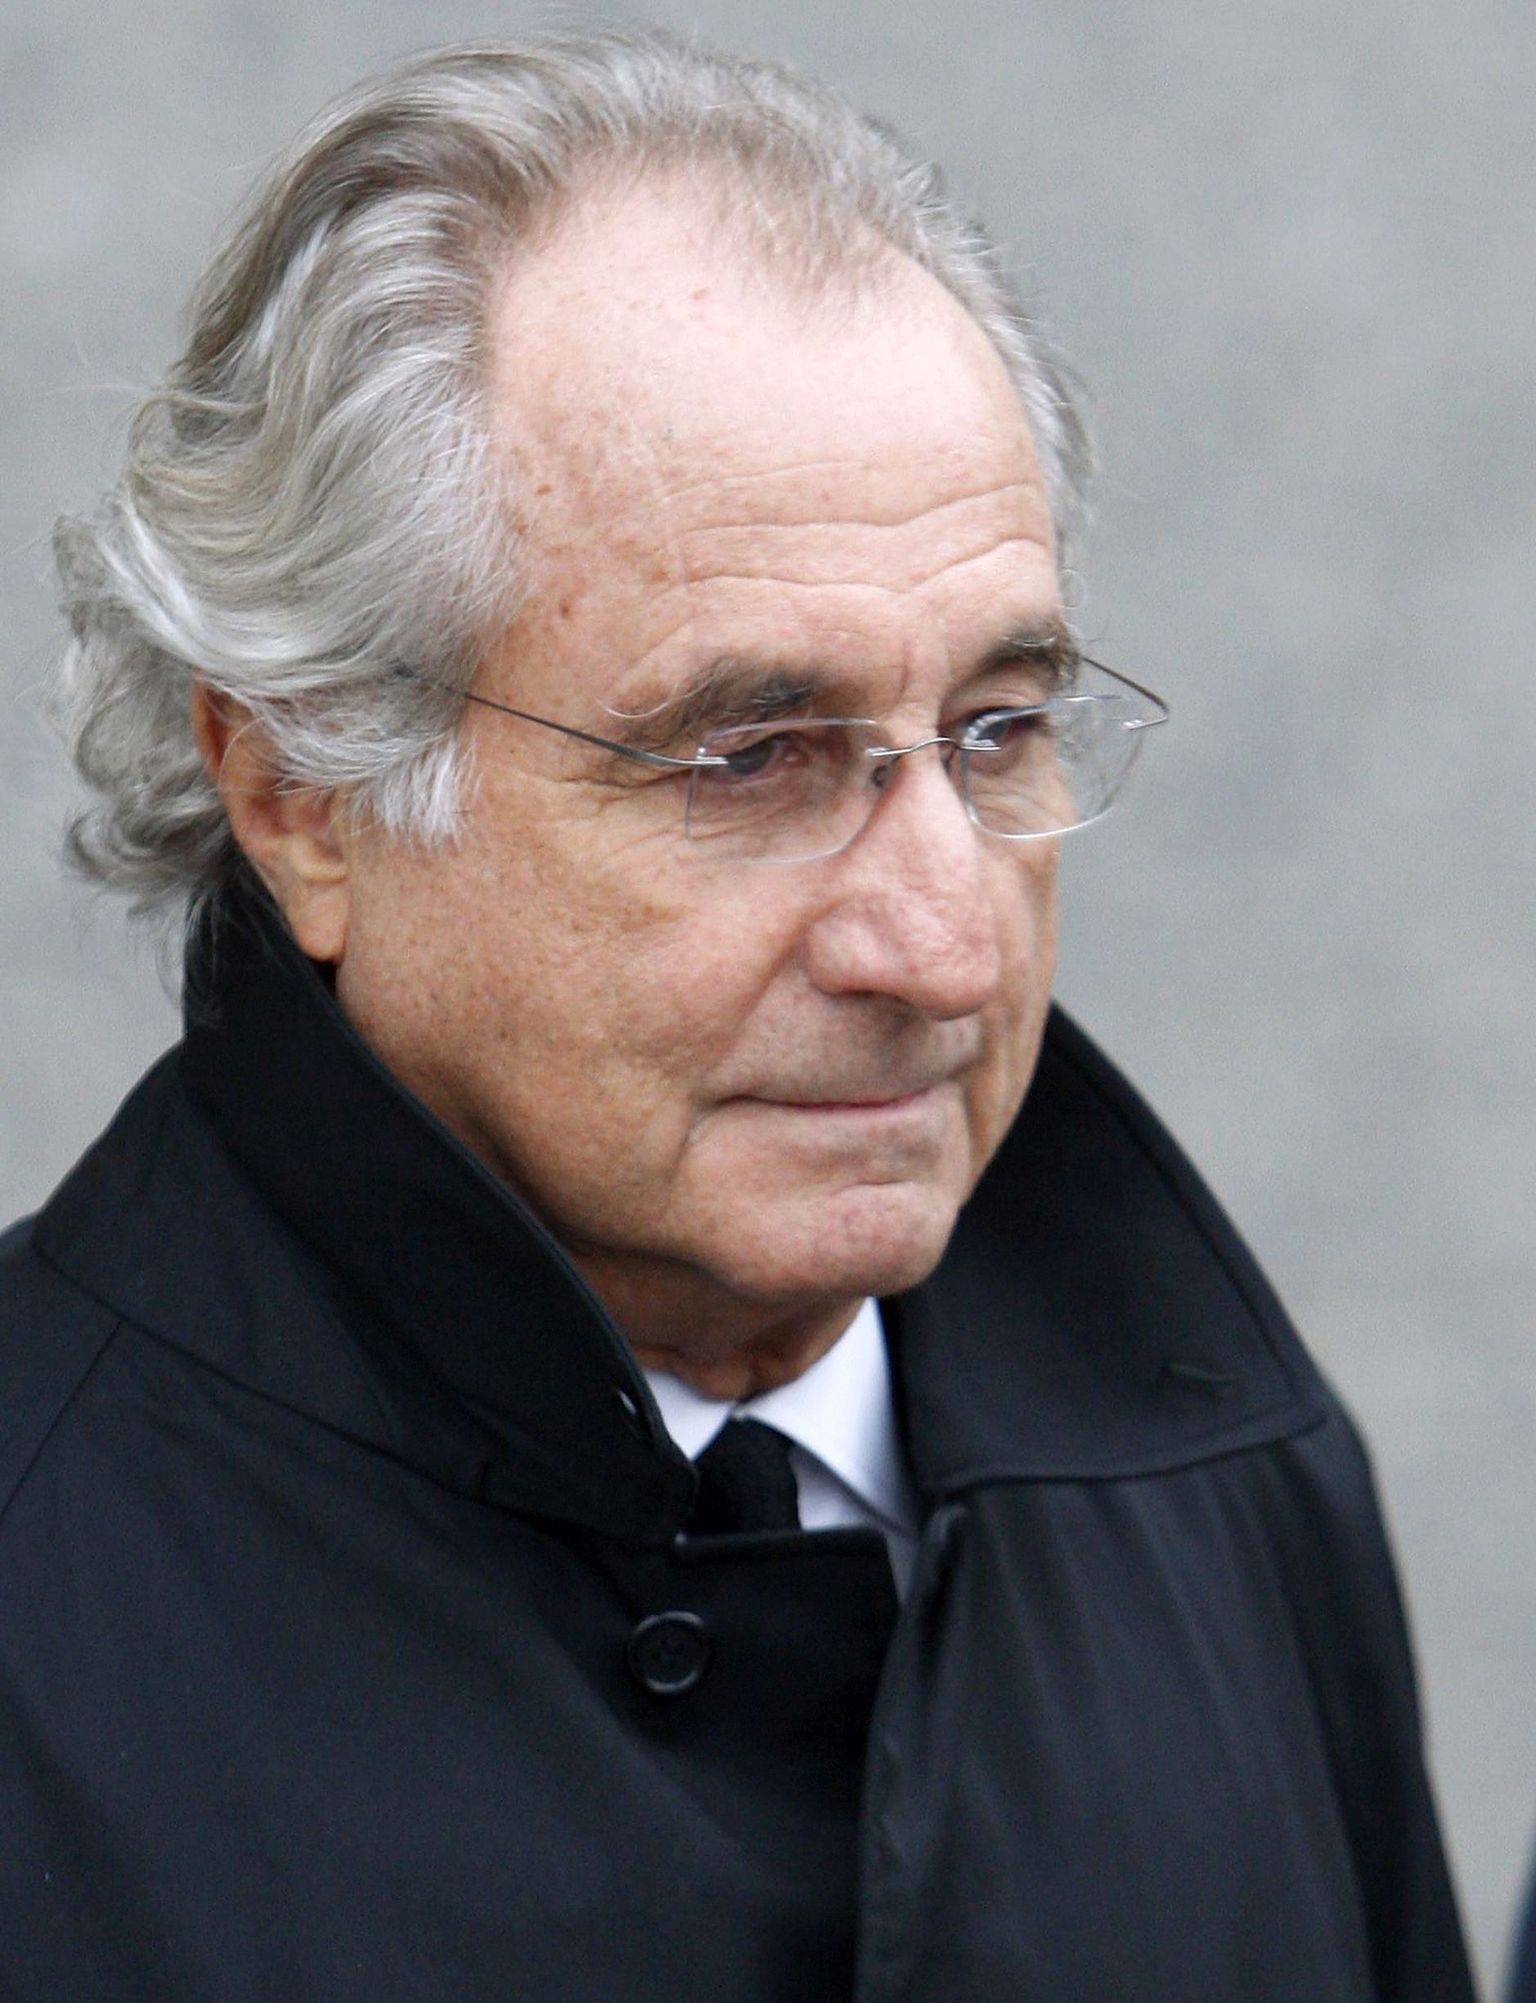 Bernard Madoff.